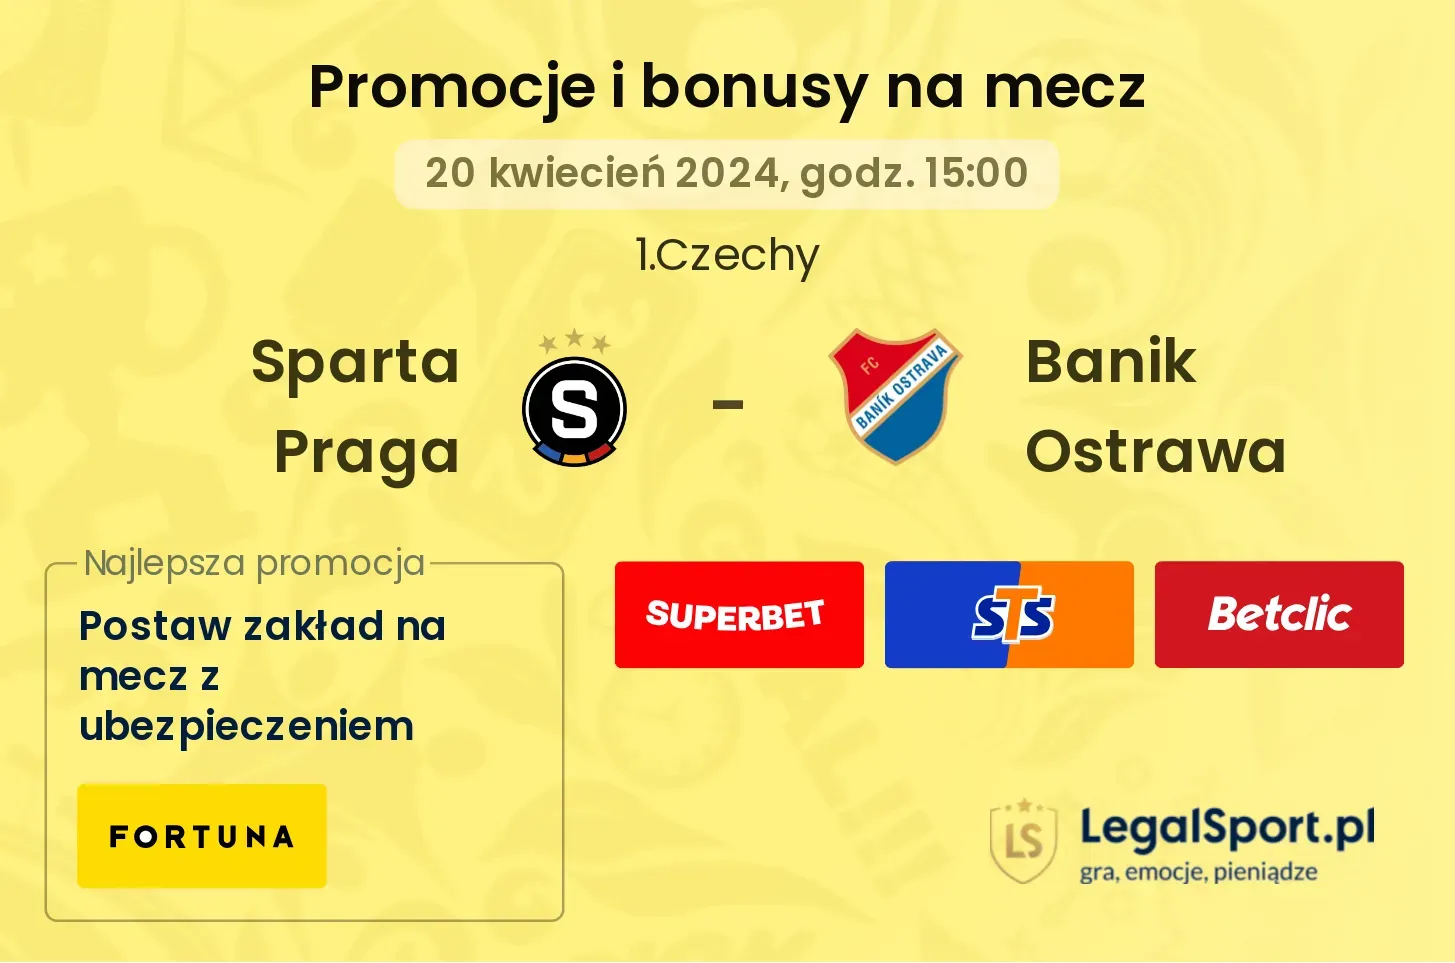 Sparta Praga - Banik Ostrawa promocje bonusy na mecz